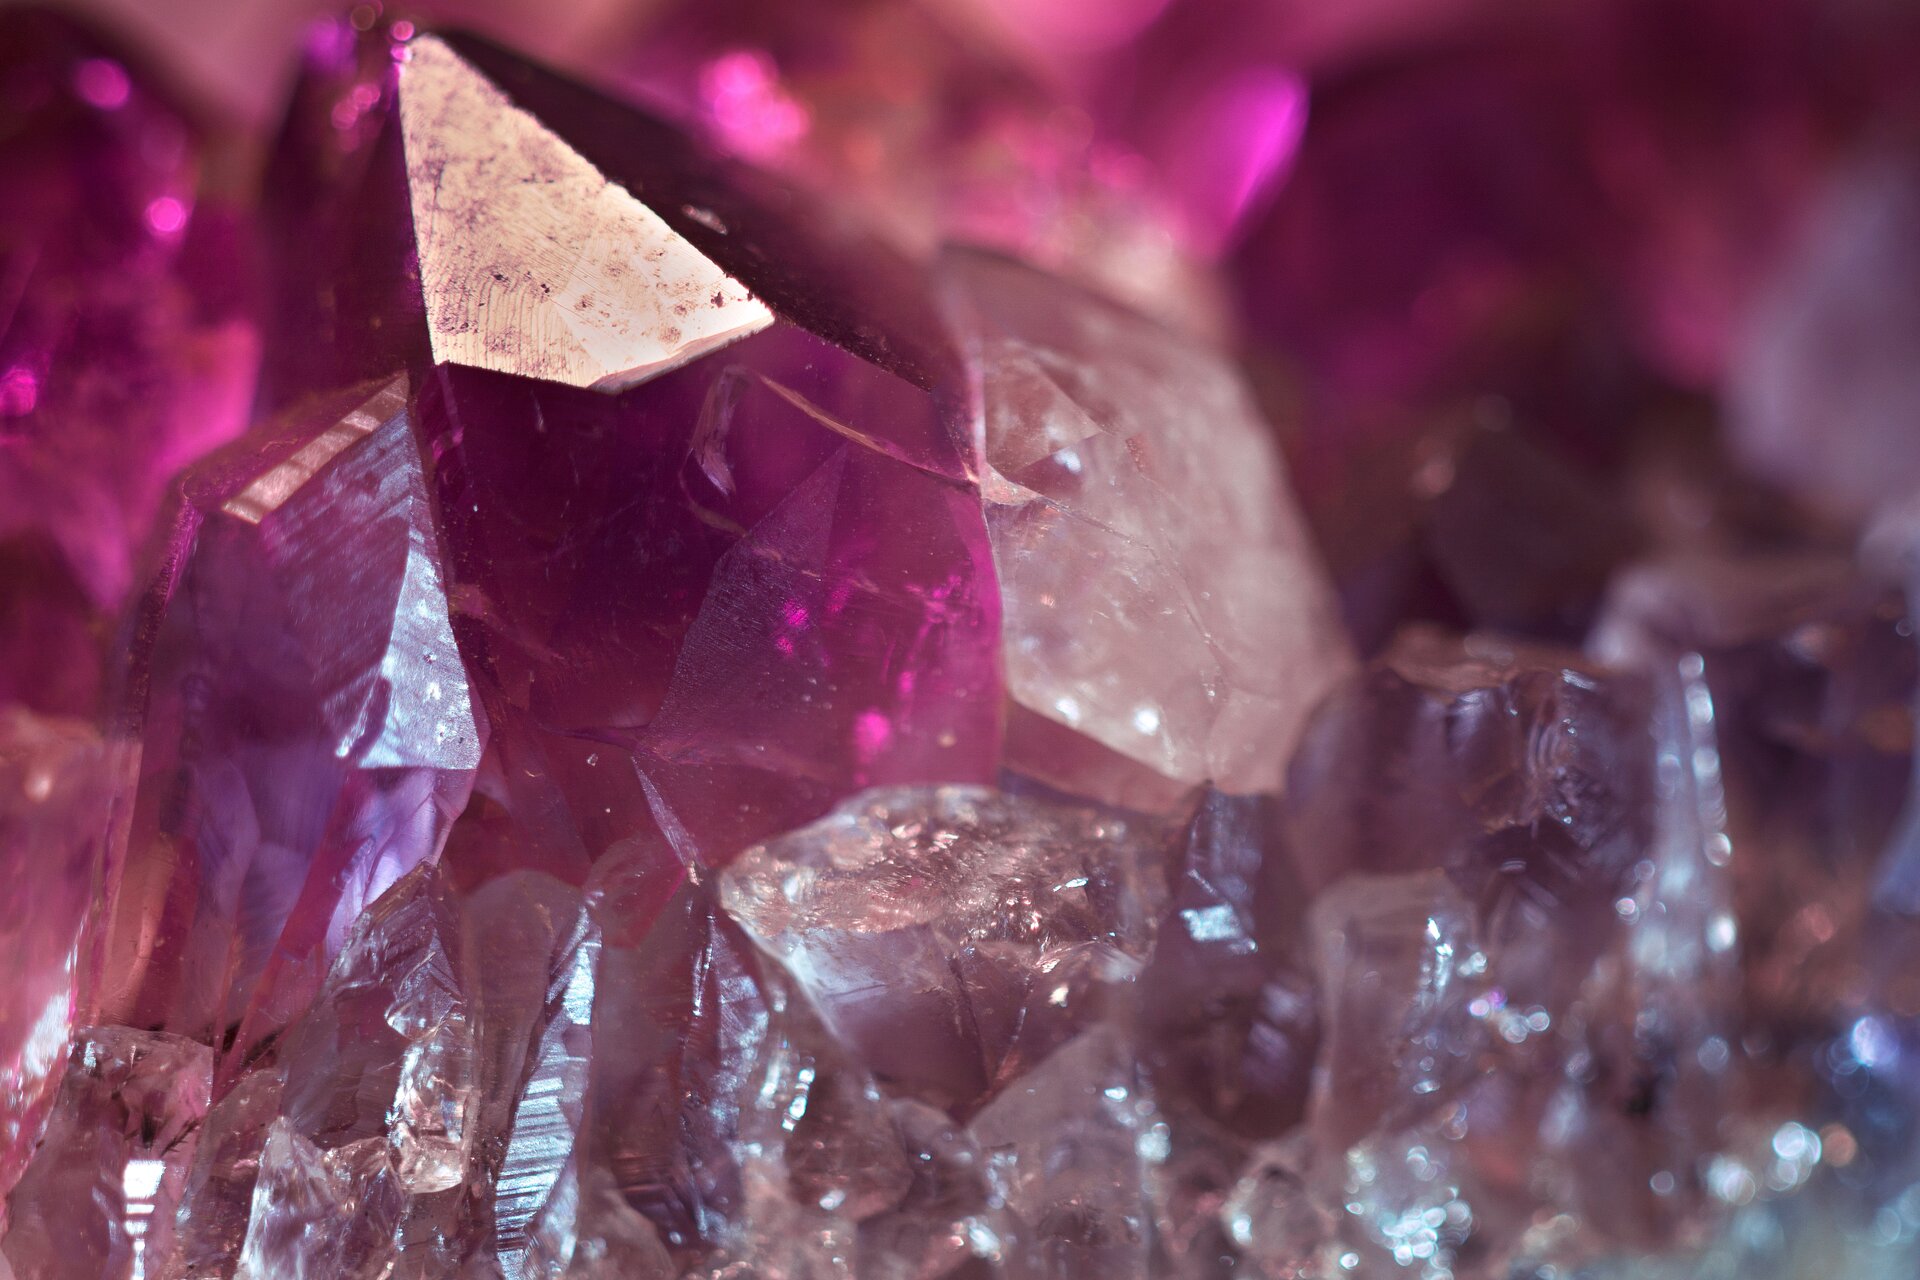 Zdjęcie przedstawia fragment kryształu ametystu w zbliżeniu, na tle pozostałej, większej części minerału. Uwagę zwracają gładkie powierzchnie krystalicznego słupka oraz intensywnie purpurowa barwa kamienia.